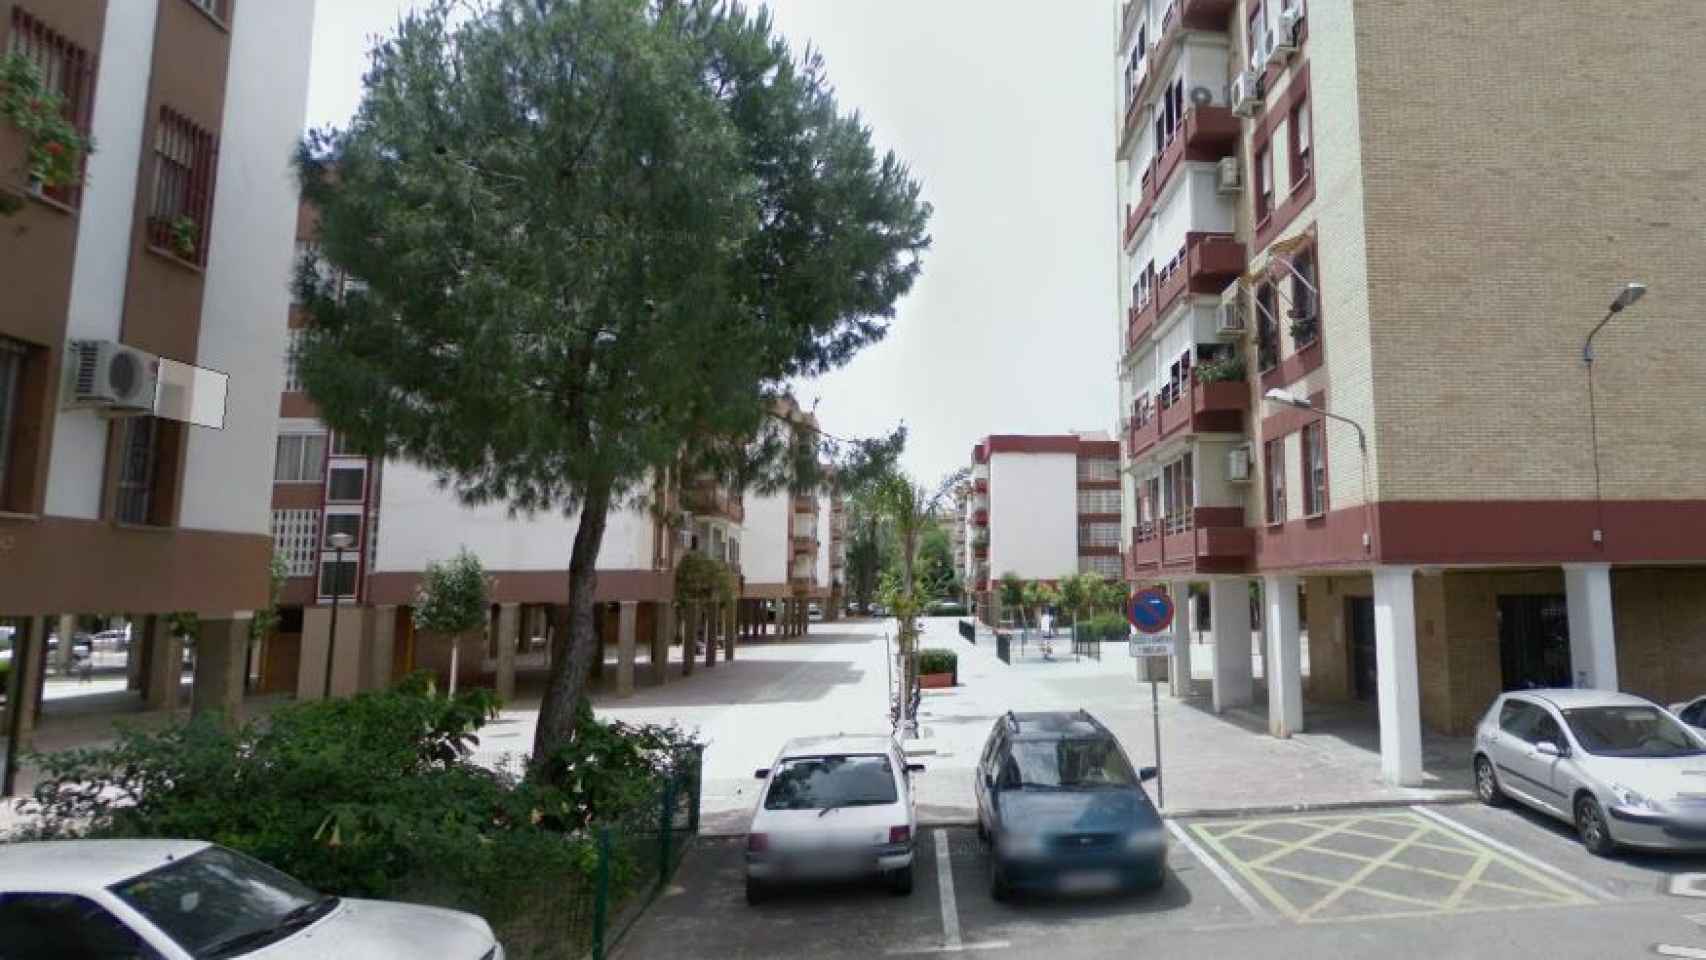 Calle de Sevilla en la que ocurrieron los hechos